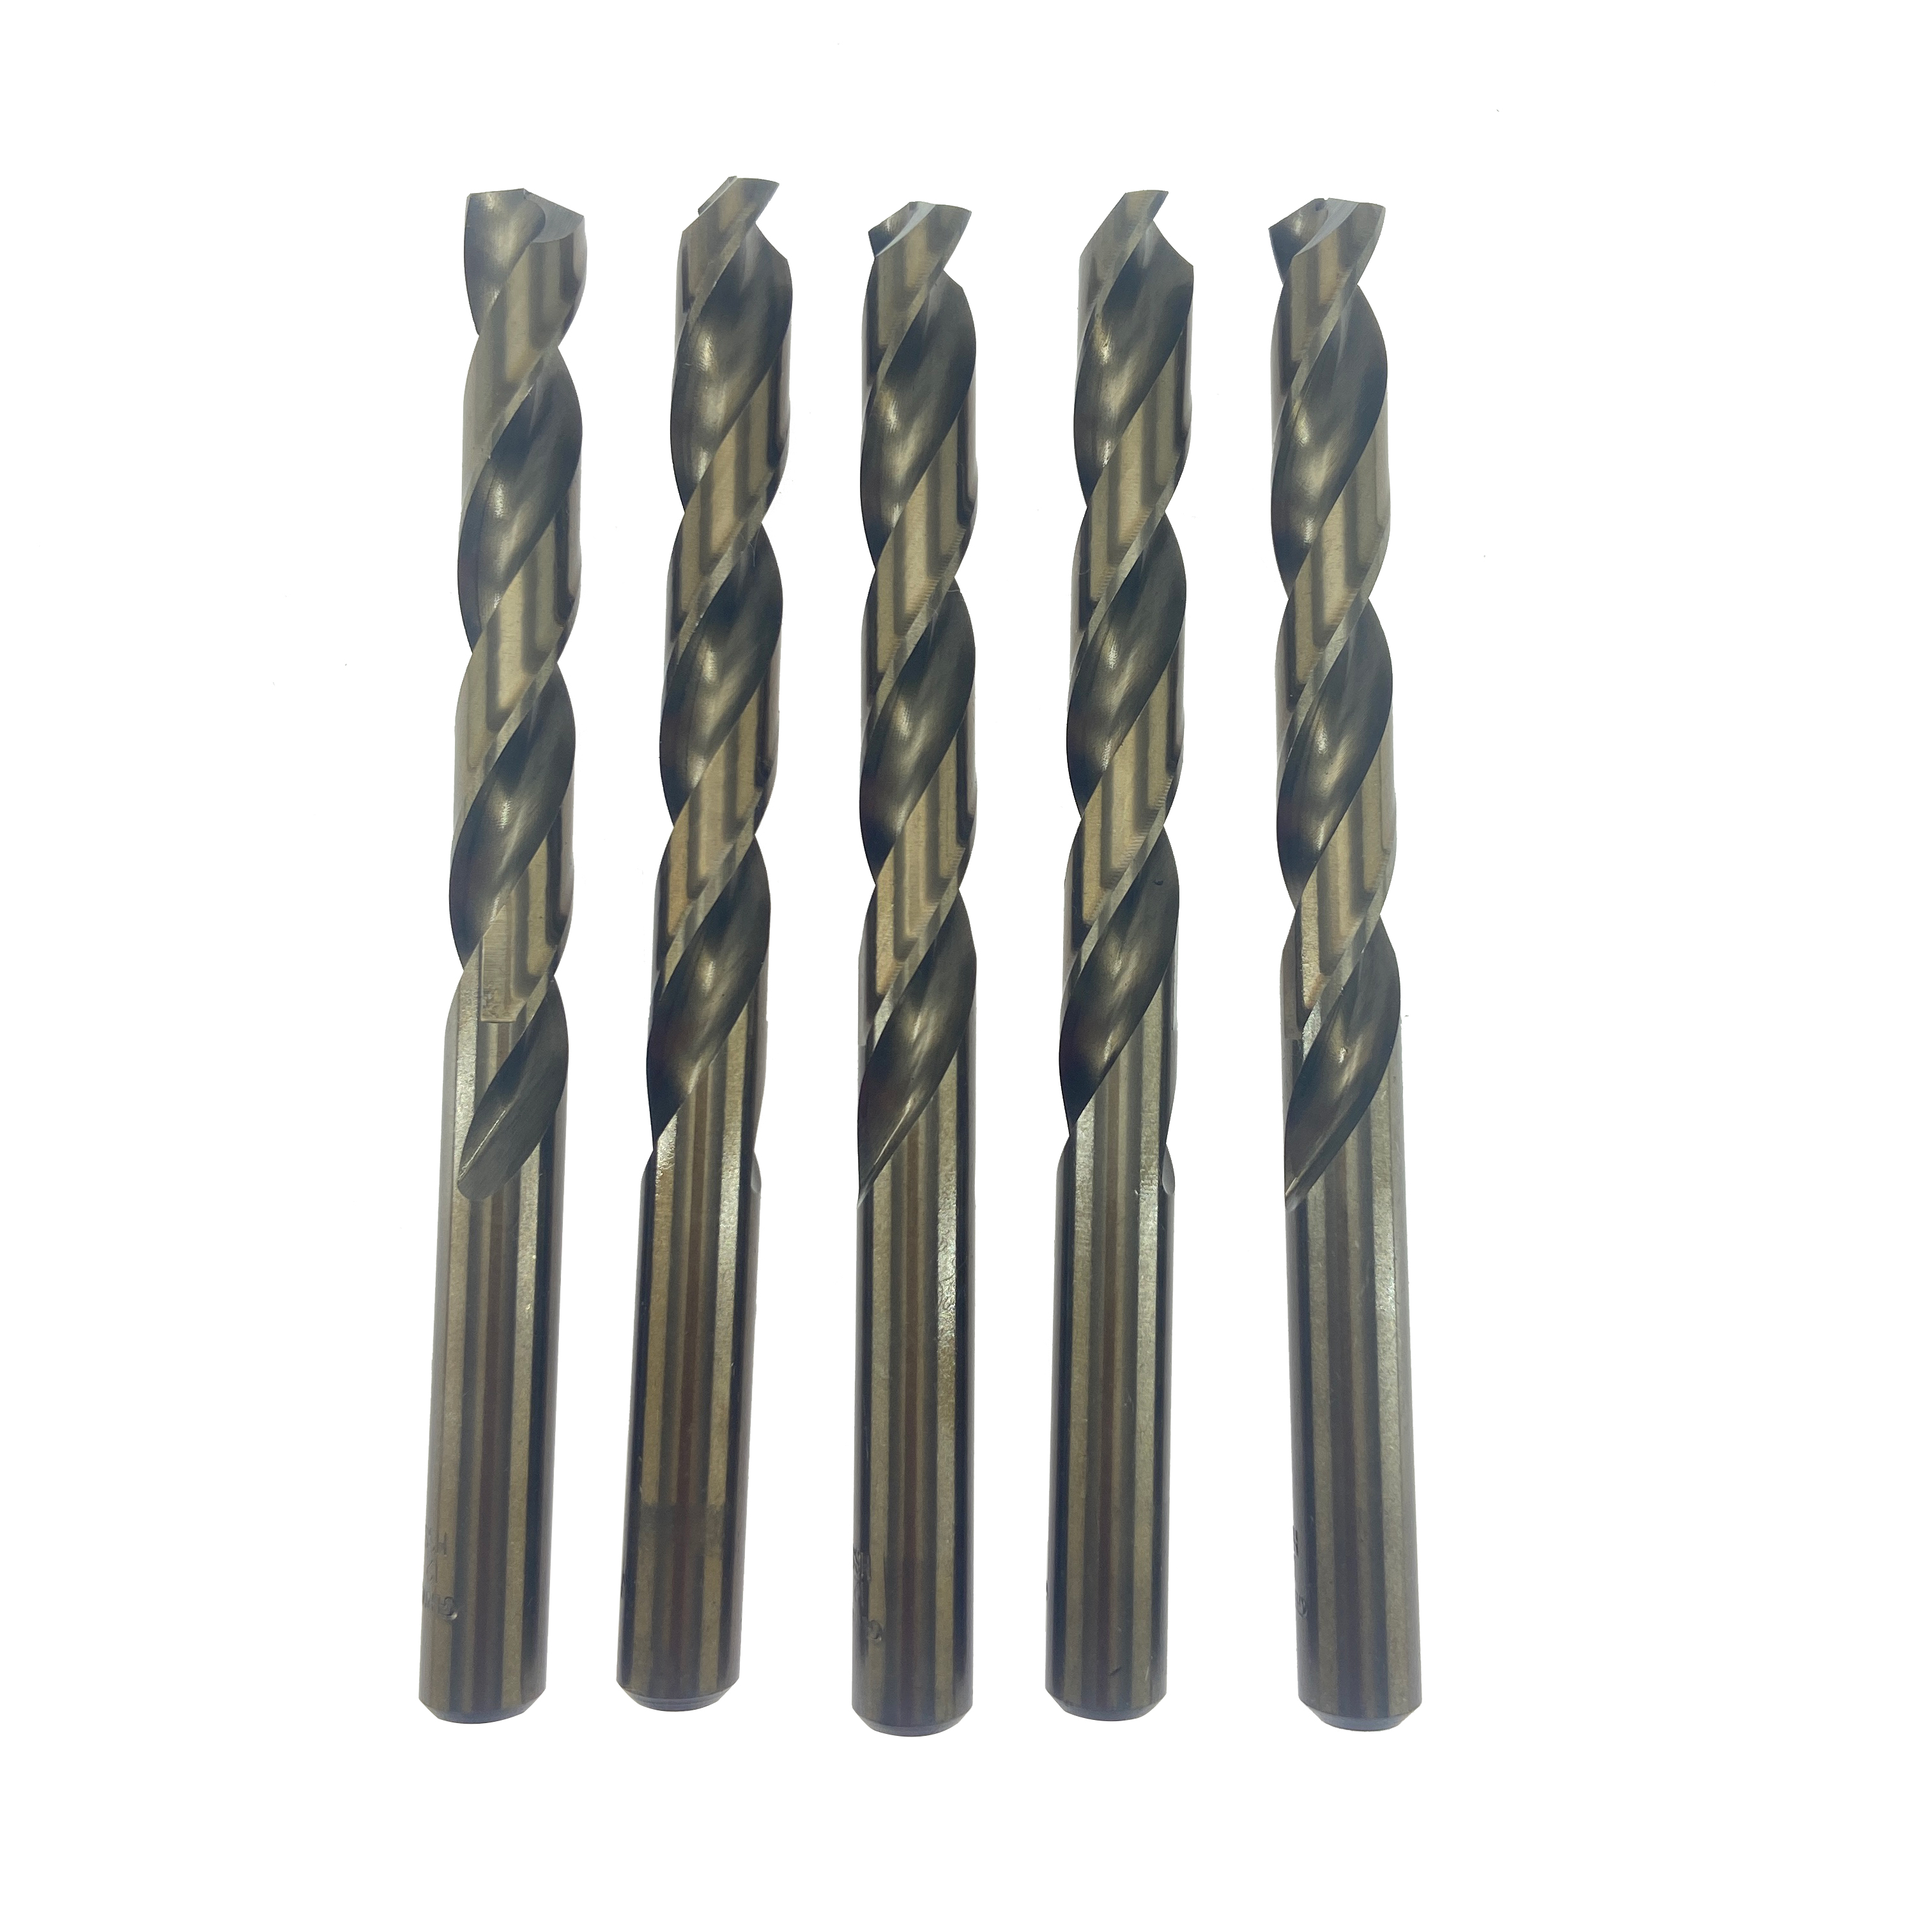 Brocas helicoidales M2 6542 HSS de 12 mm para taladrar metal hierro aluminio